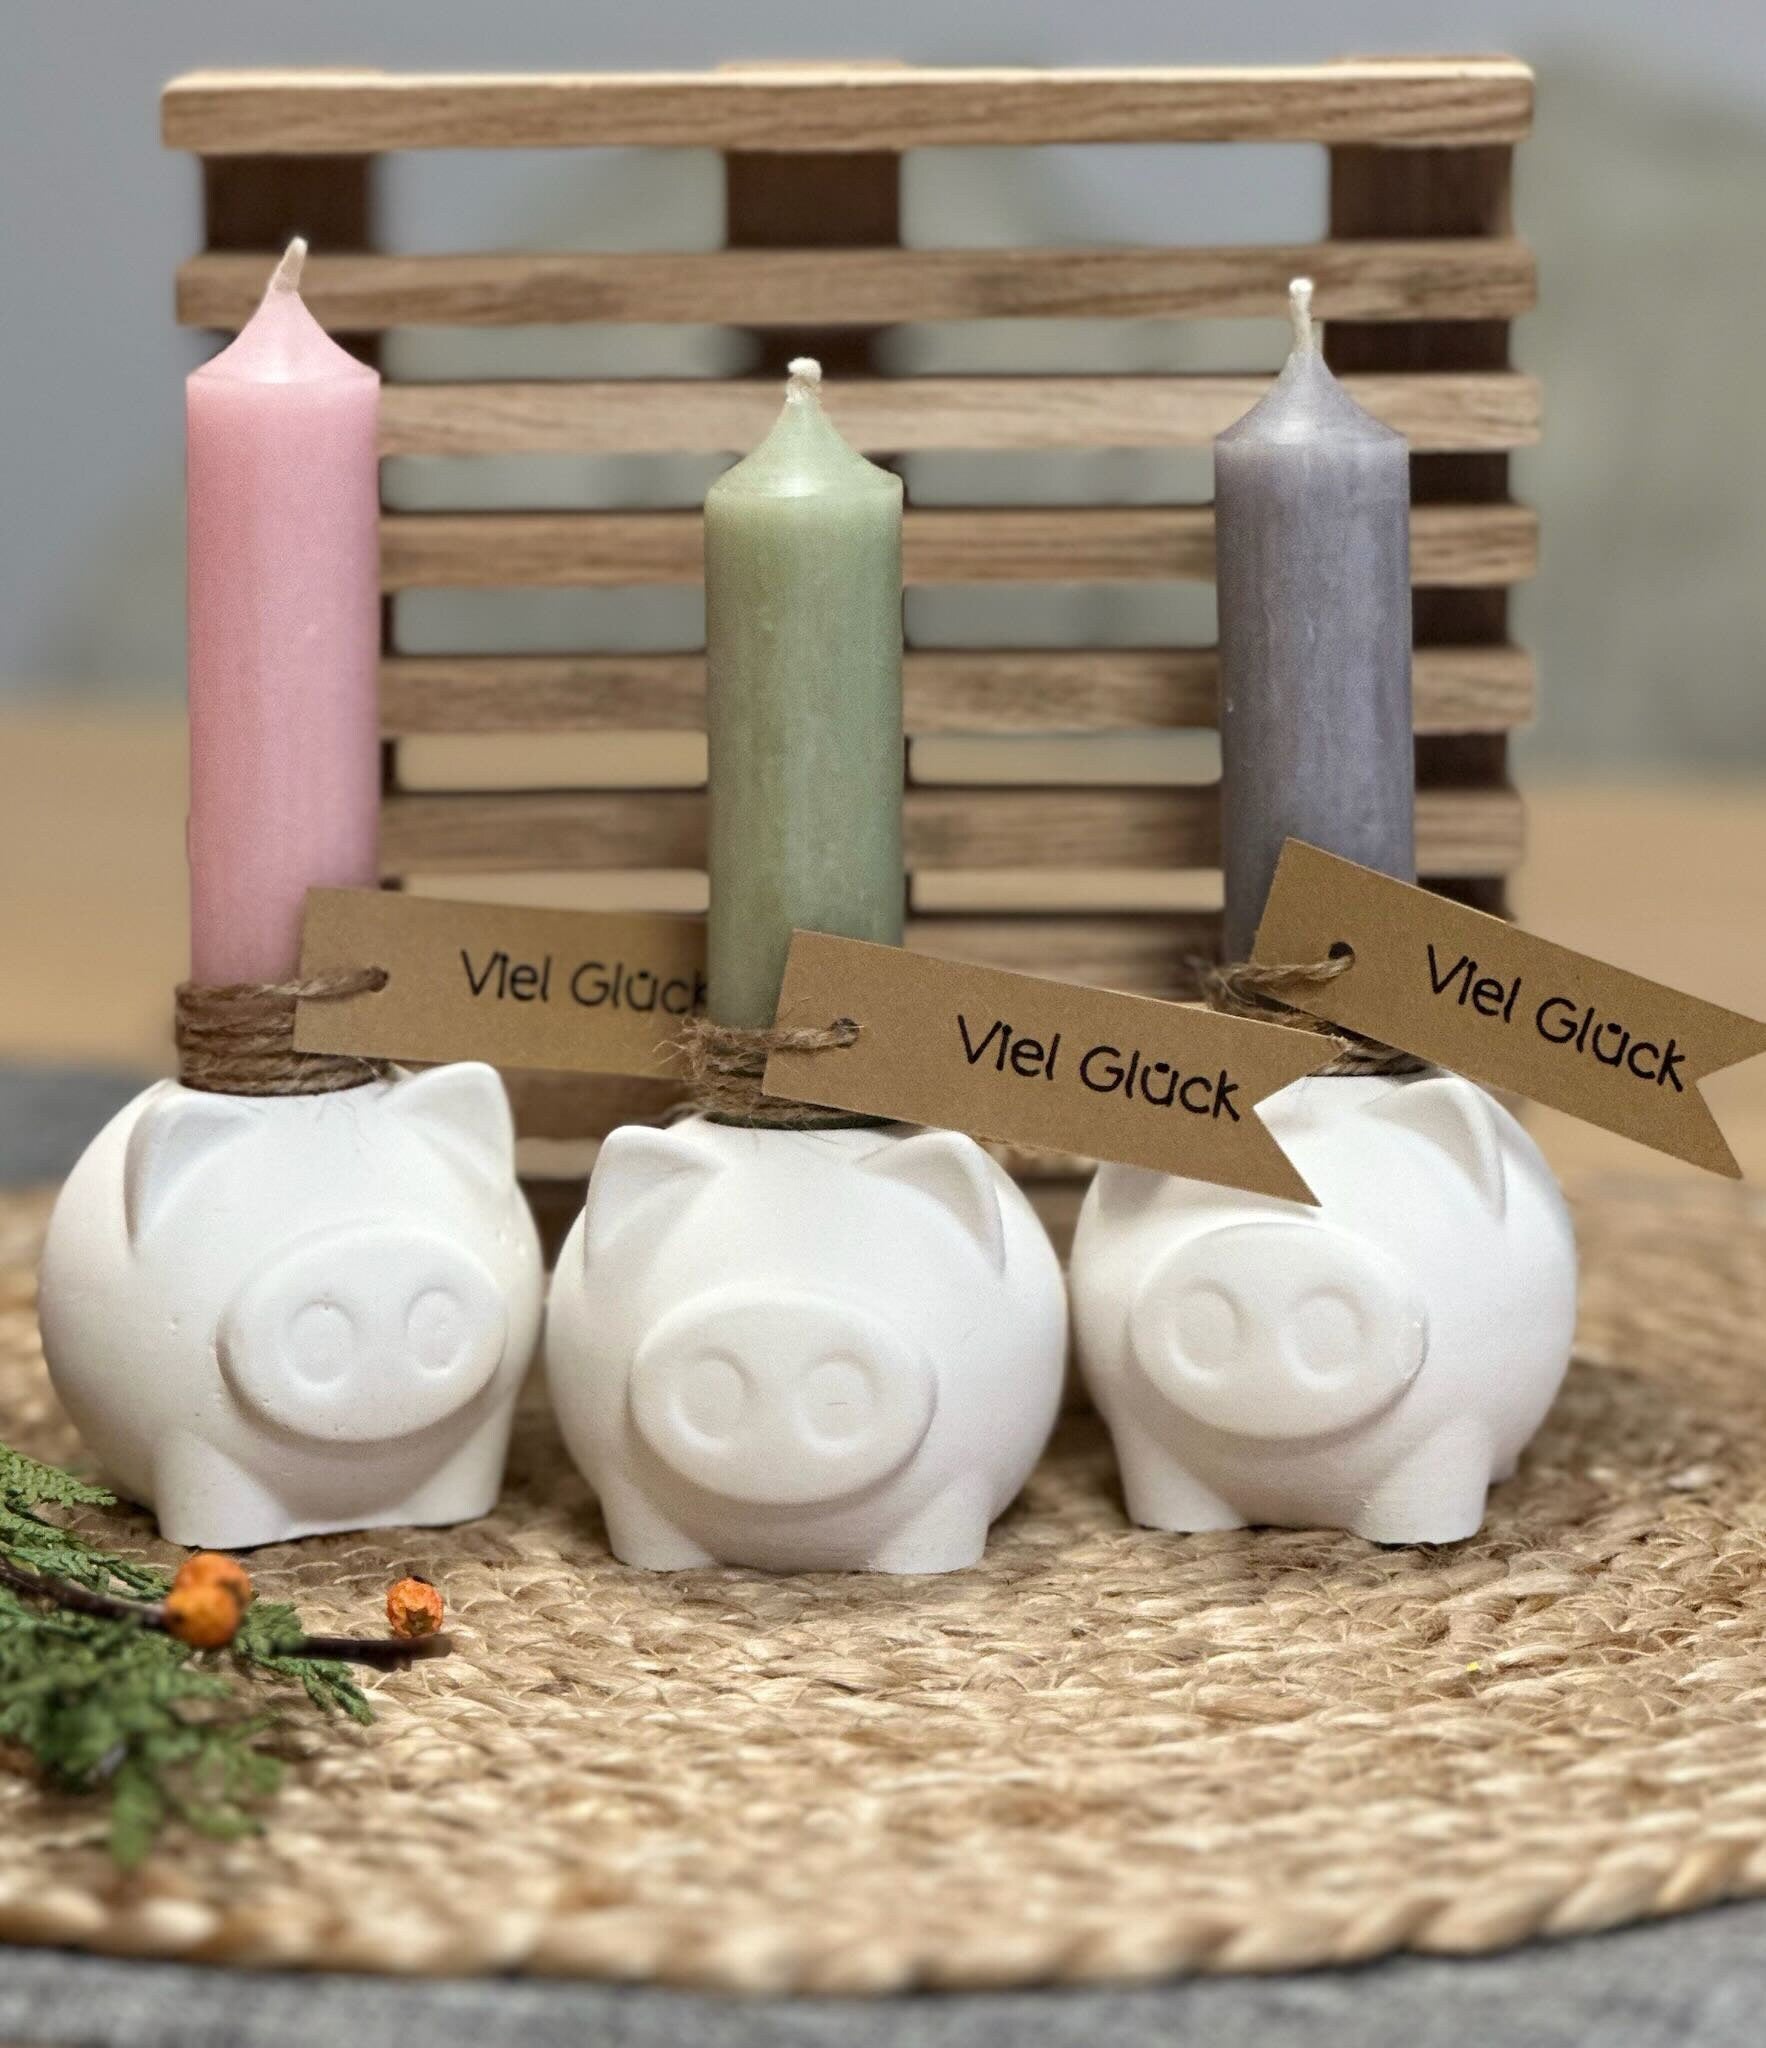 Glücksschweinchen aus Keraflott mit Viel Glück Kerze – Ein zauberhaftes Geschenk für besondere Anlässe! Silvester,Glücksbringer,Mitbringsel